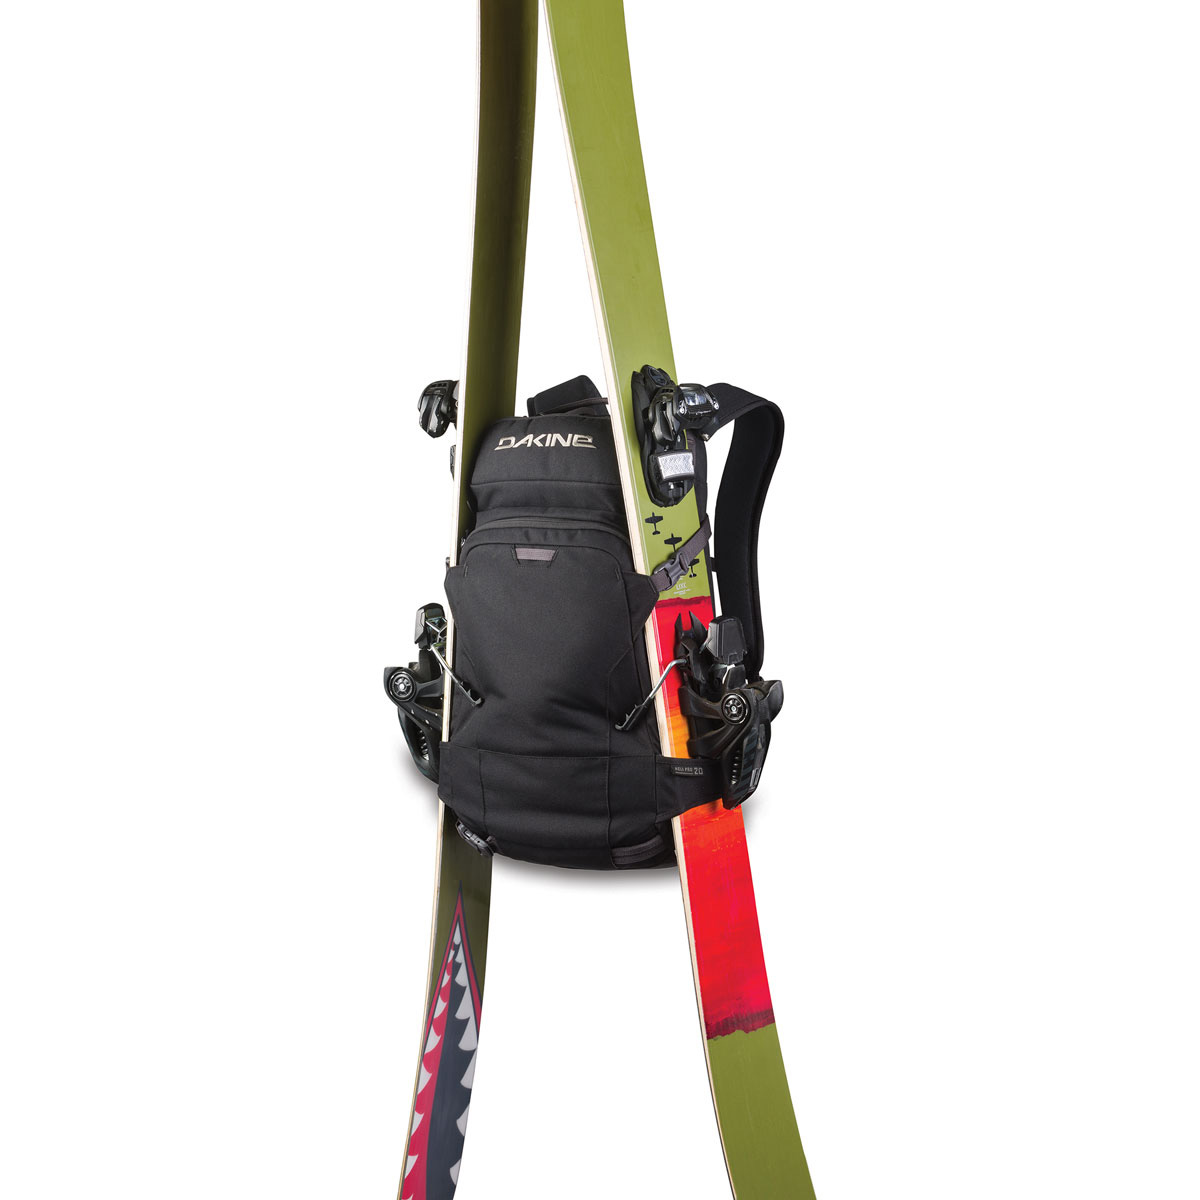 Ski/snowboard backpack